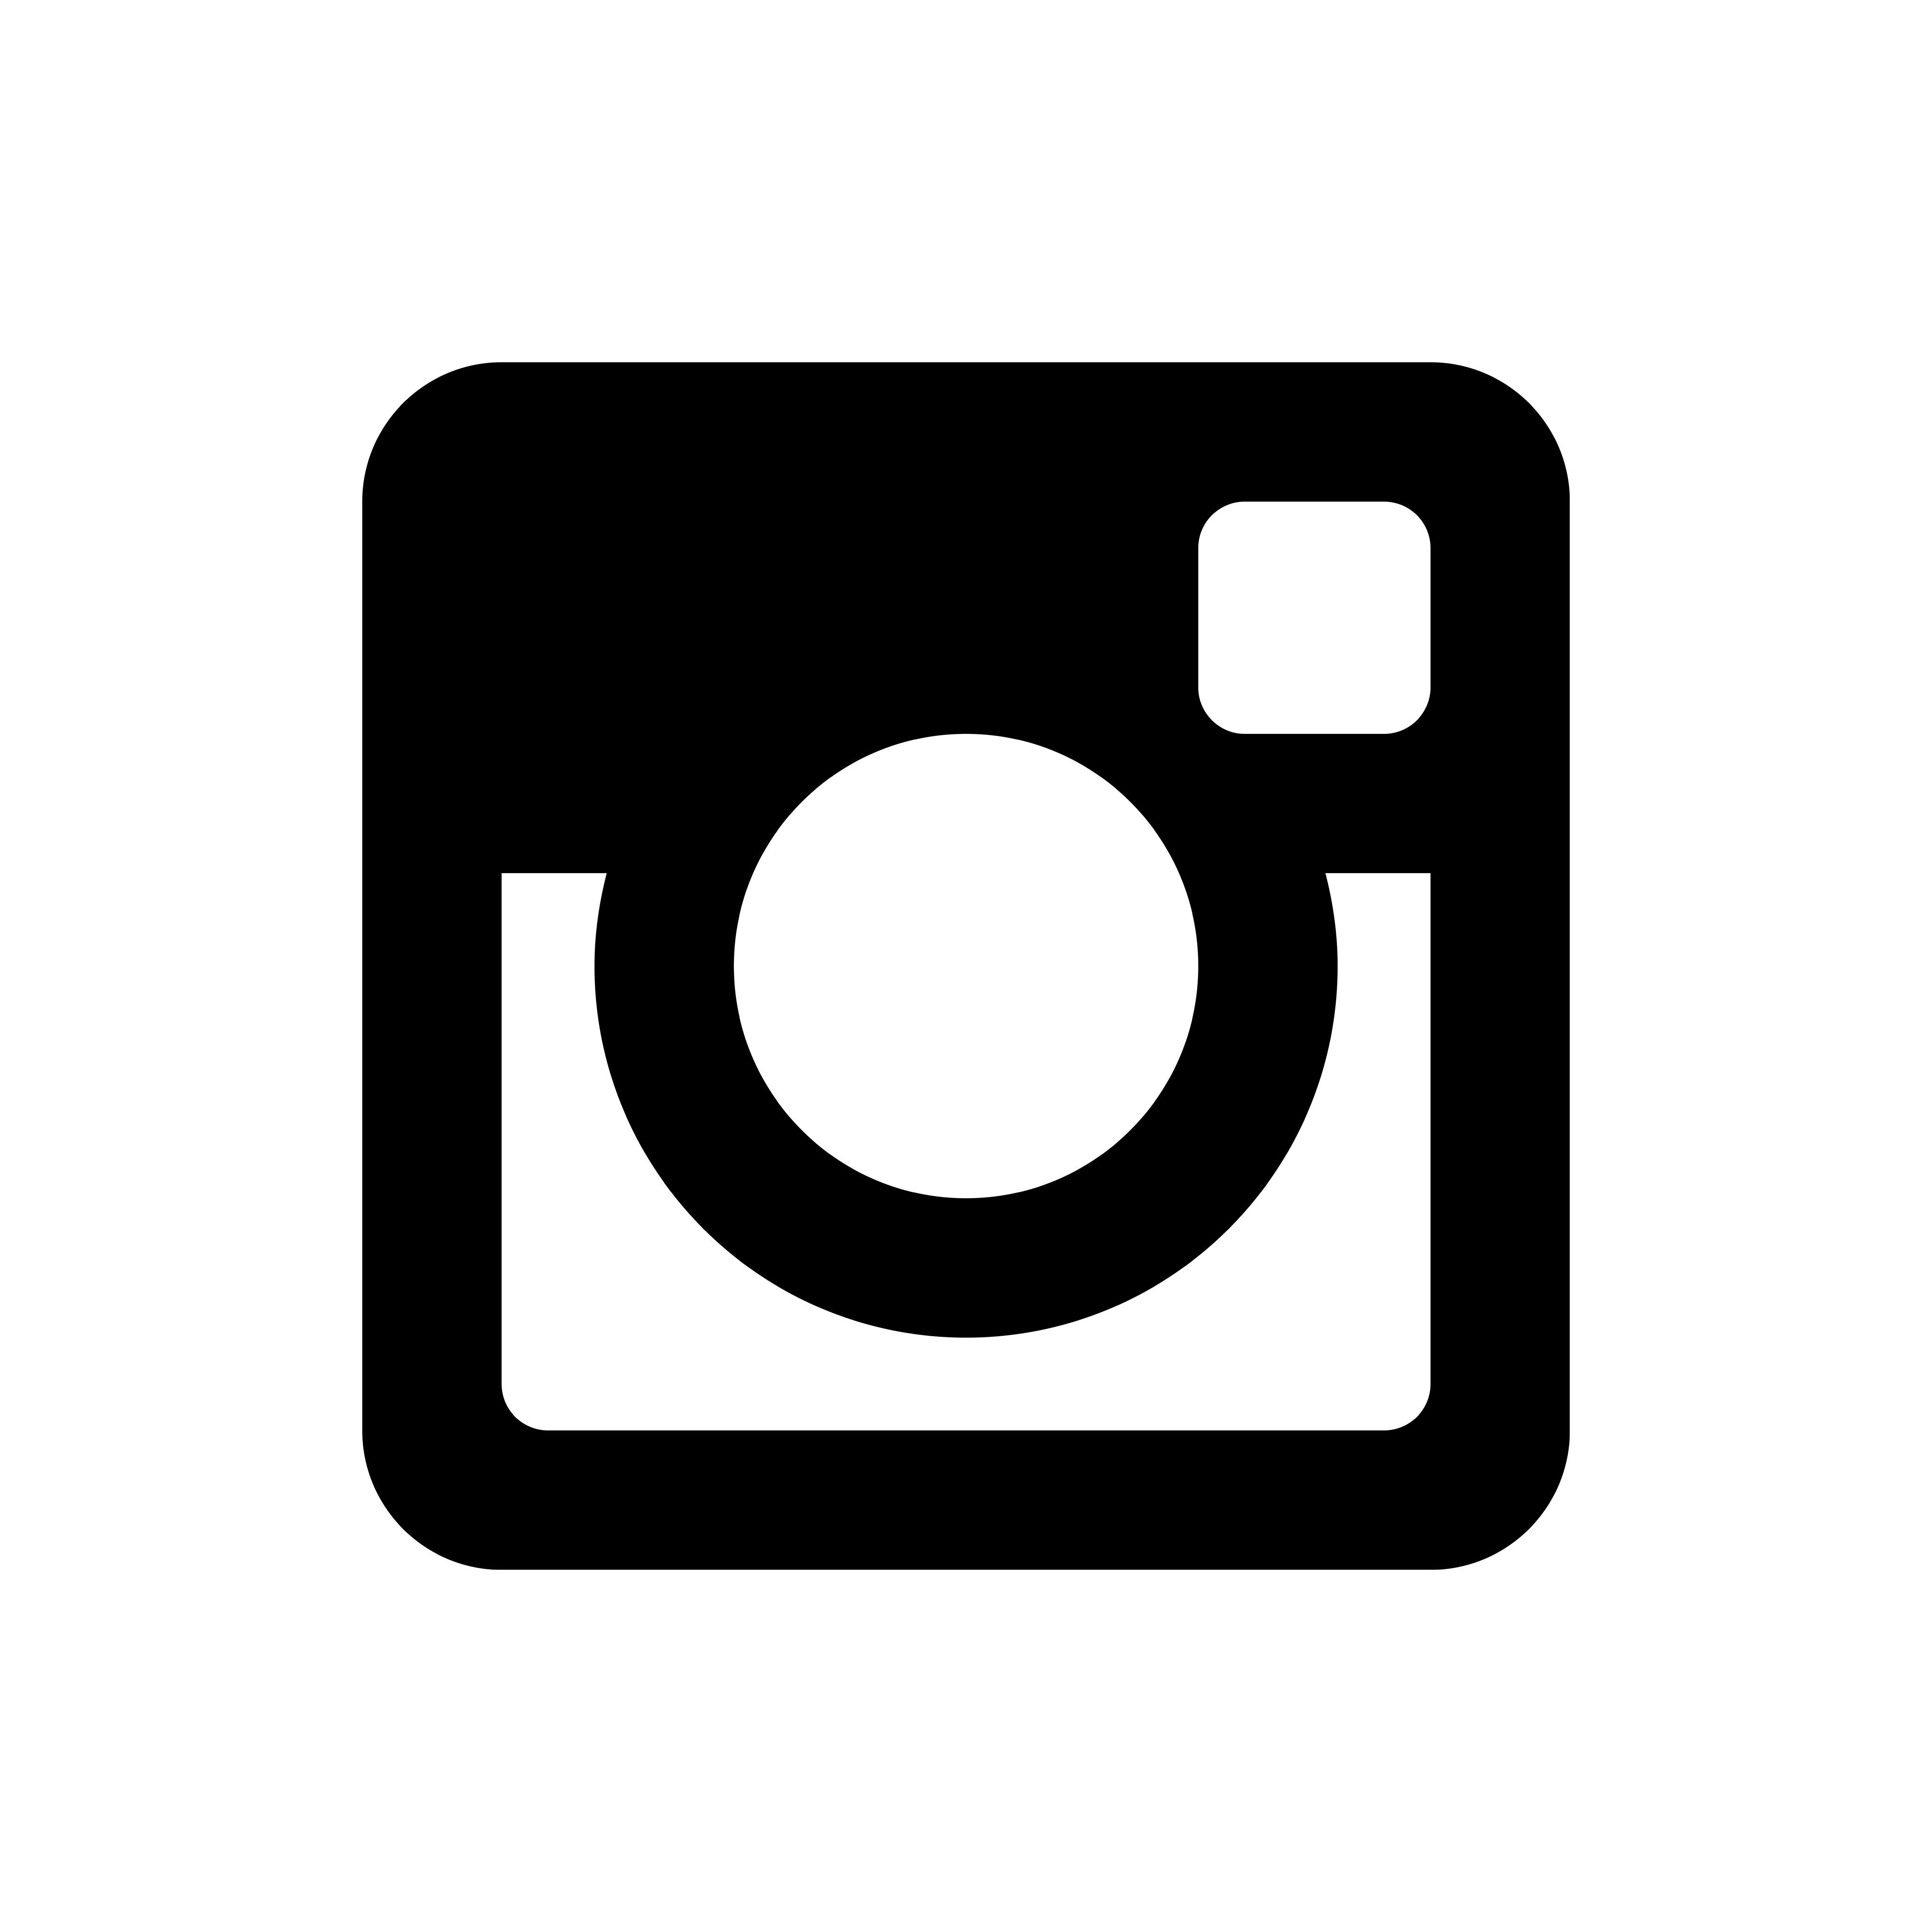 Black And White Instagram Logo Vector